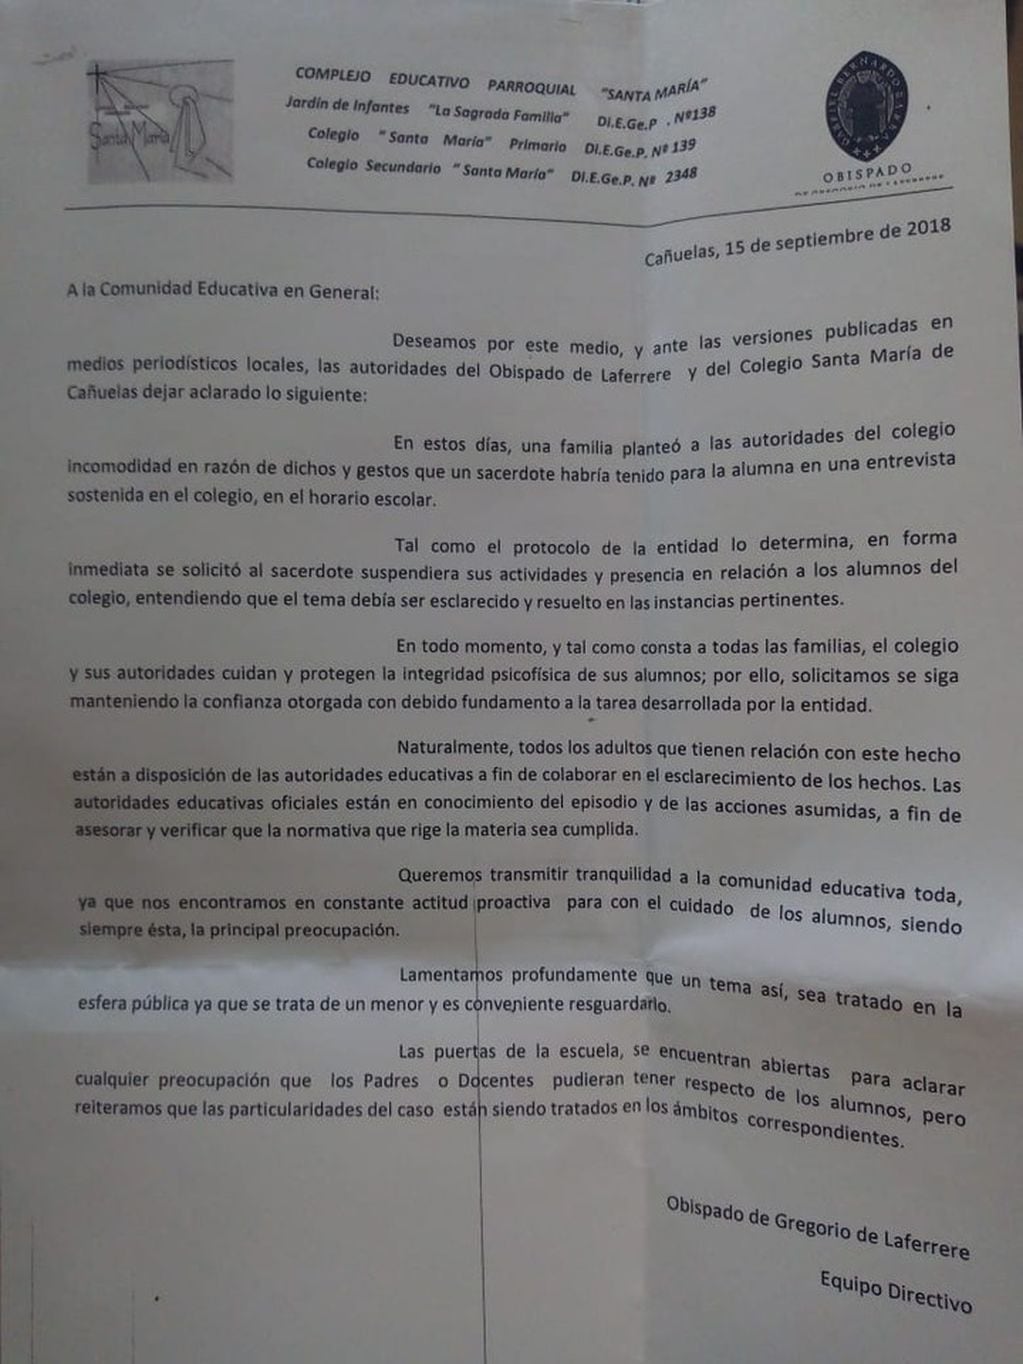 El comunicado entregado a los padres tras la denuncia de un presunto caso de abuso en el colegio Santa María de Cañuelas.